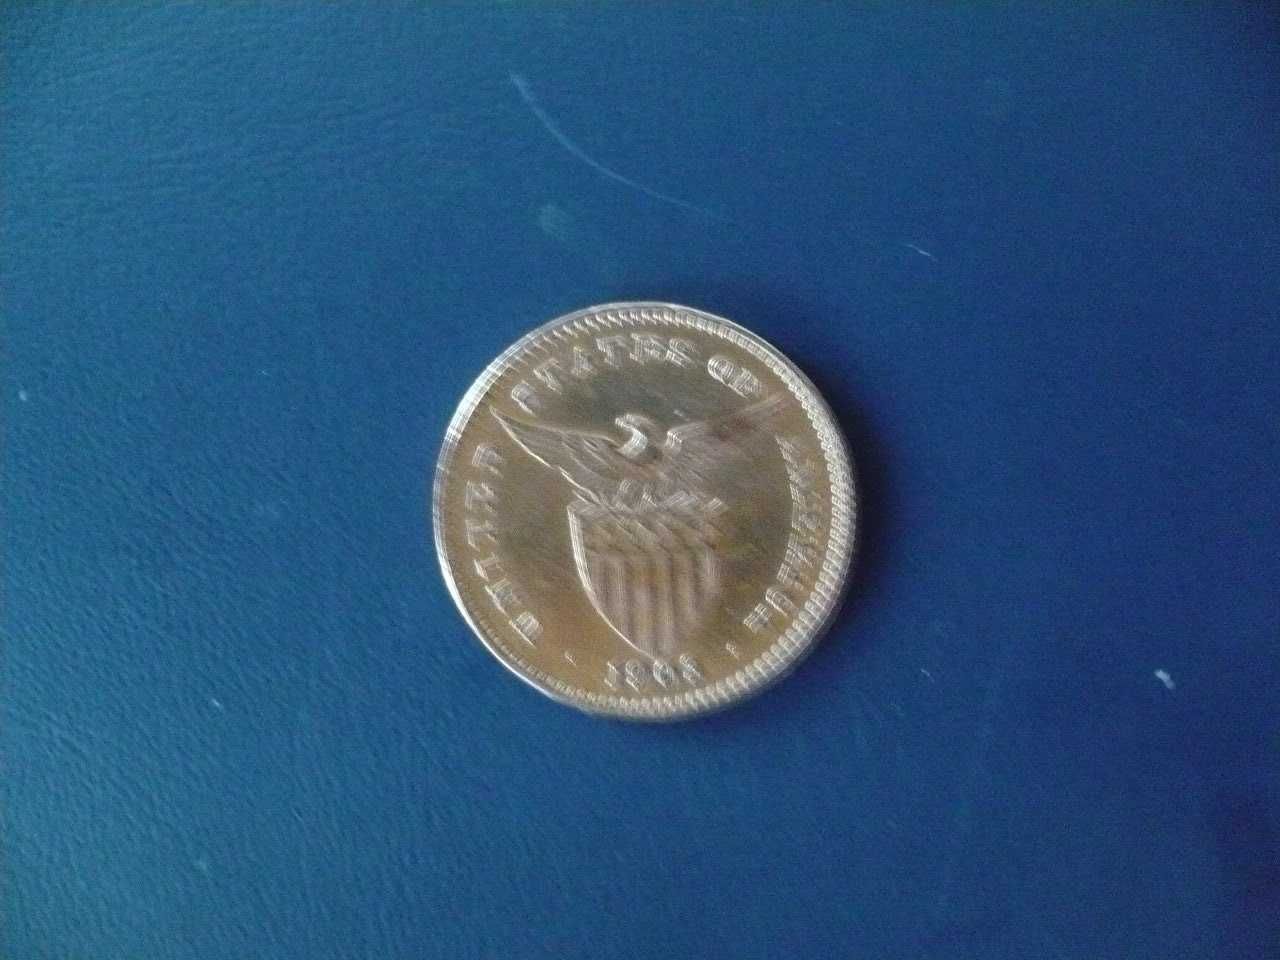 Stara moneta 1903 początki USA kolonii w Filipinach